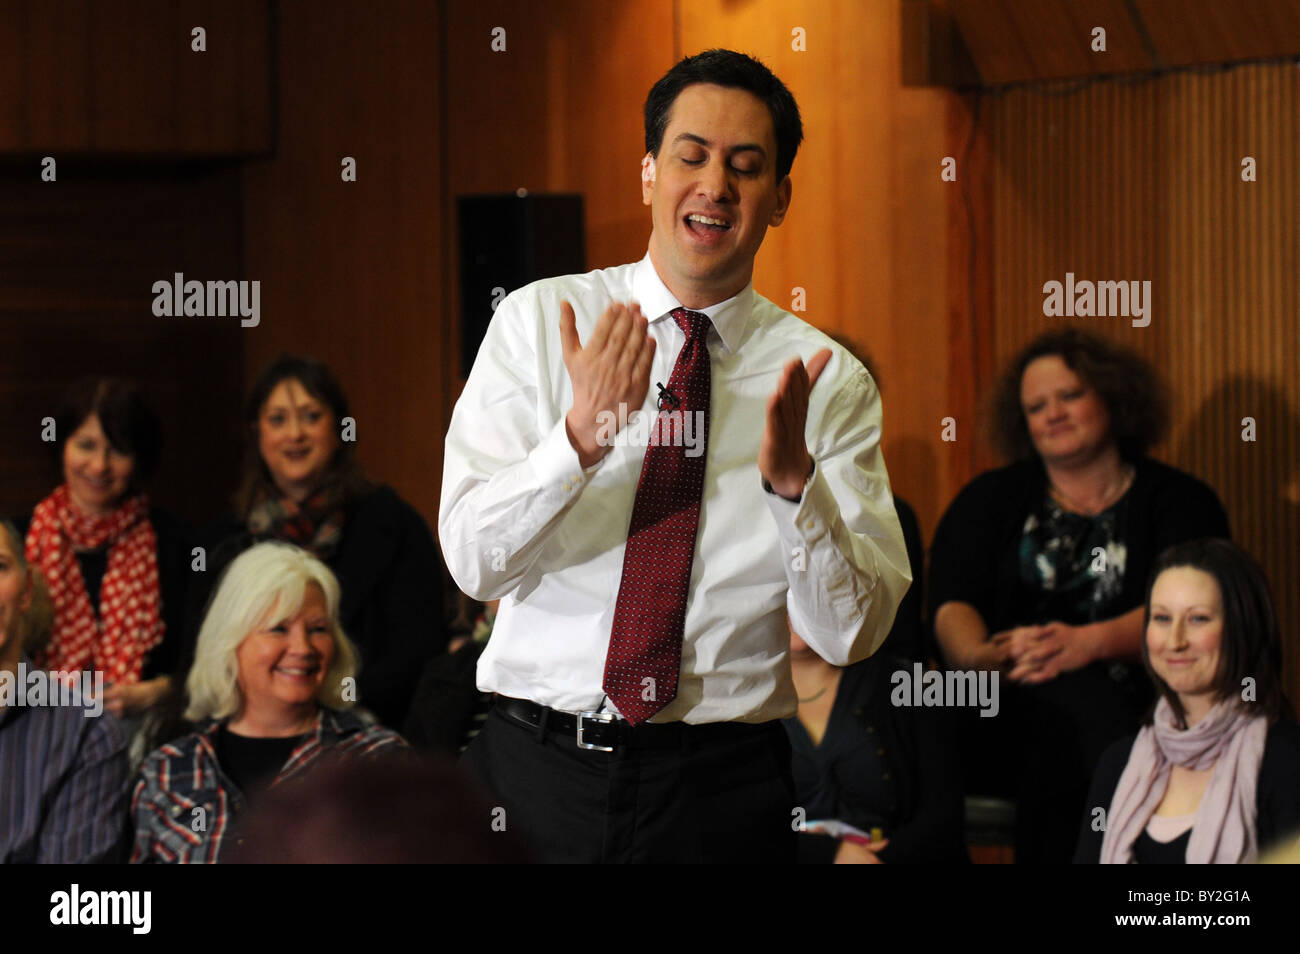 Labour Leader Ed Miliband spricht für die Öffentlichkeit während einer Sitzung Q & A in Hove Rathaus Teil der Arbeit frische Ideen Kampagne Stockfoto